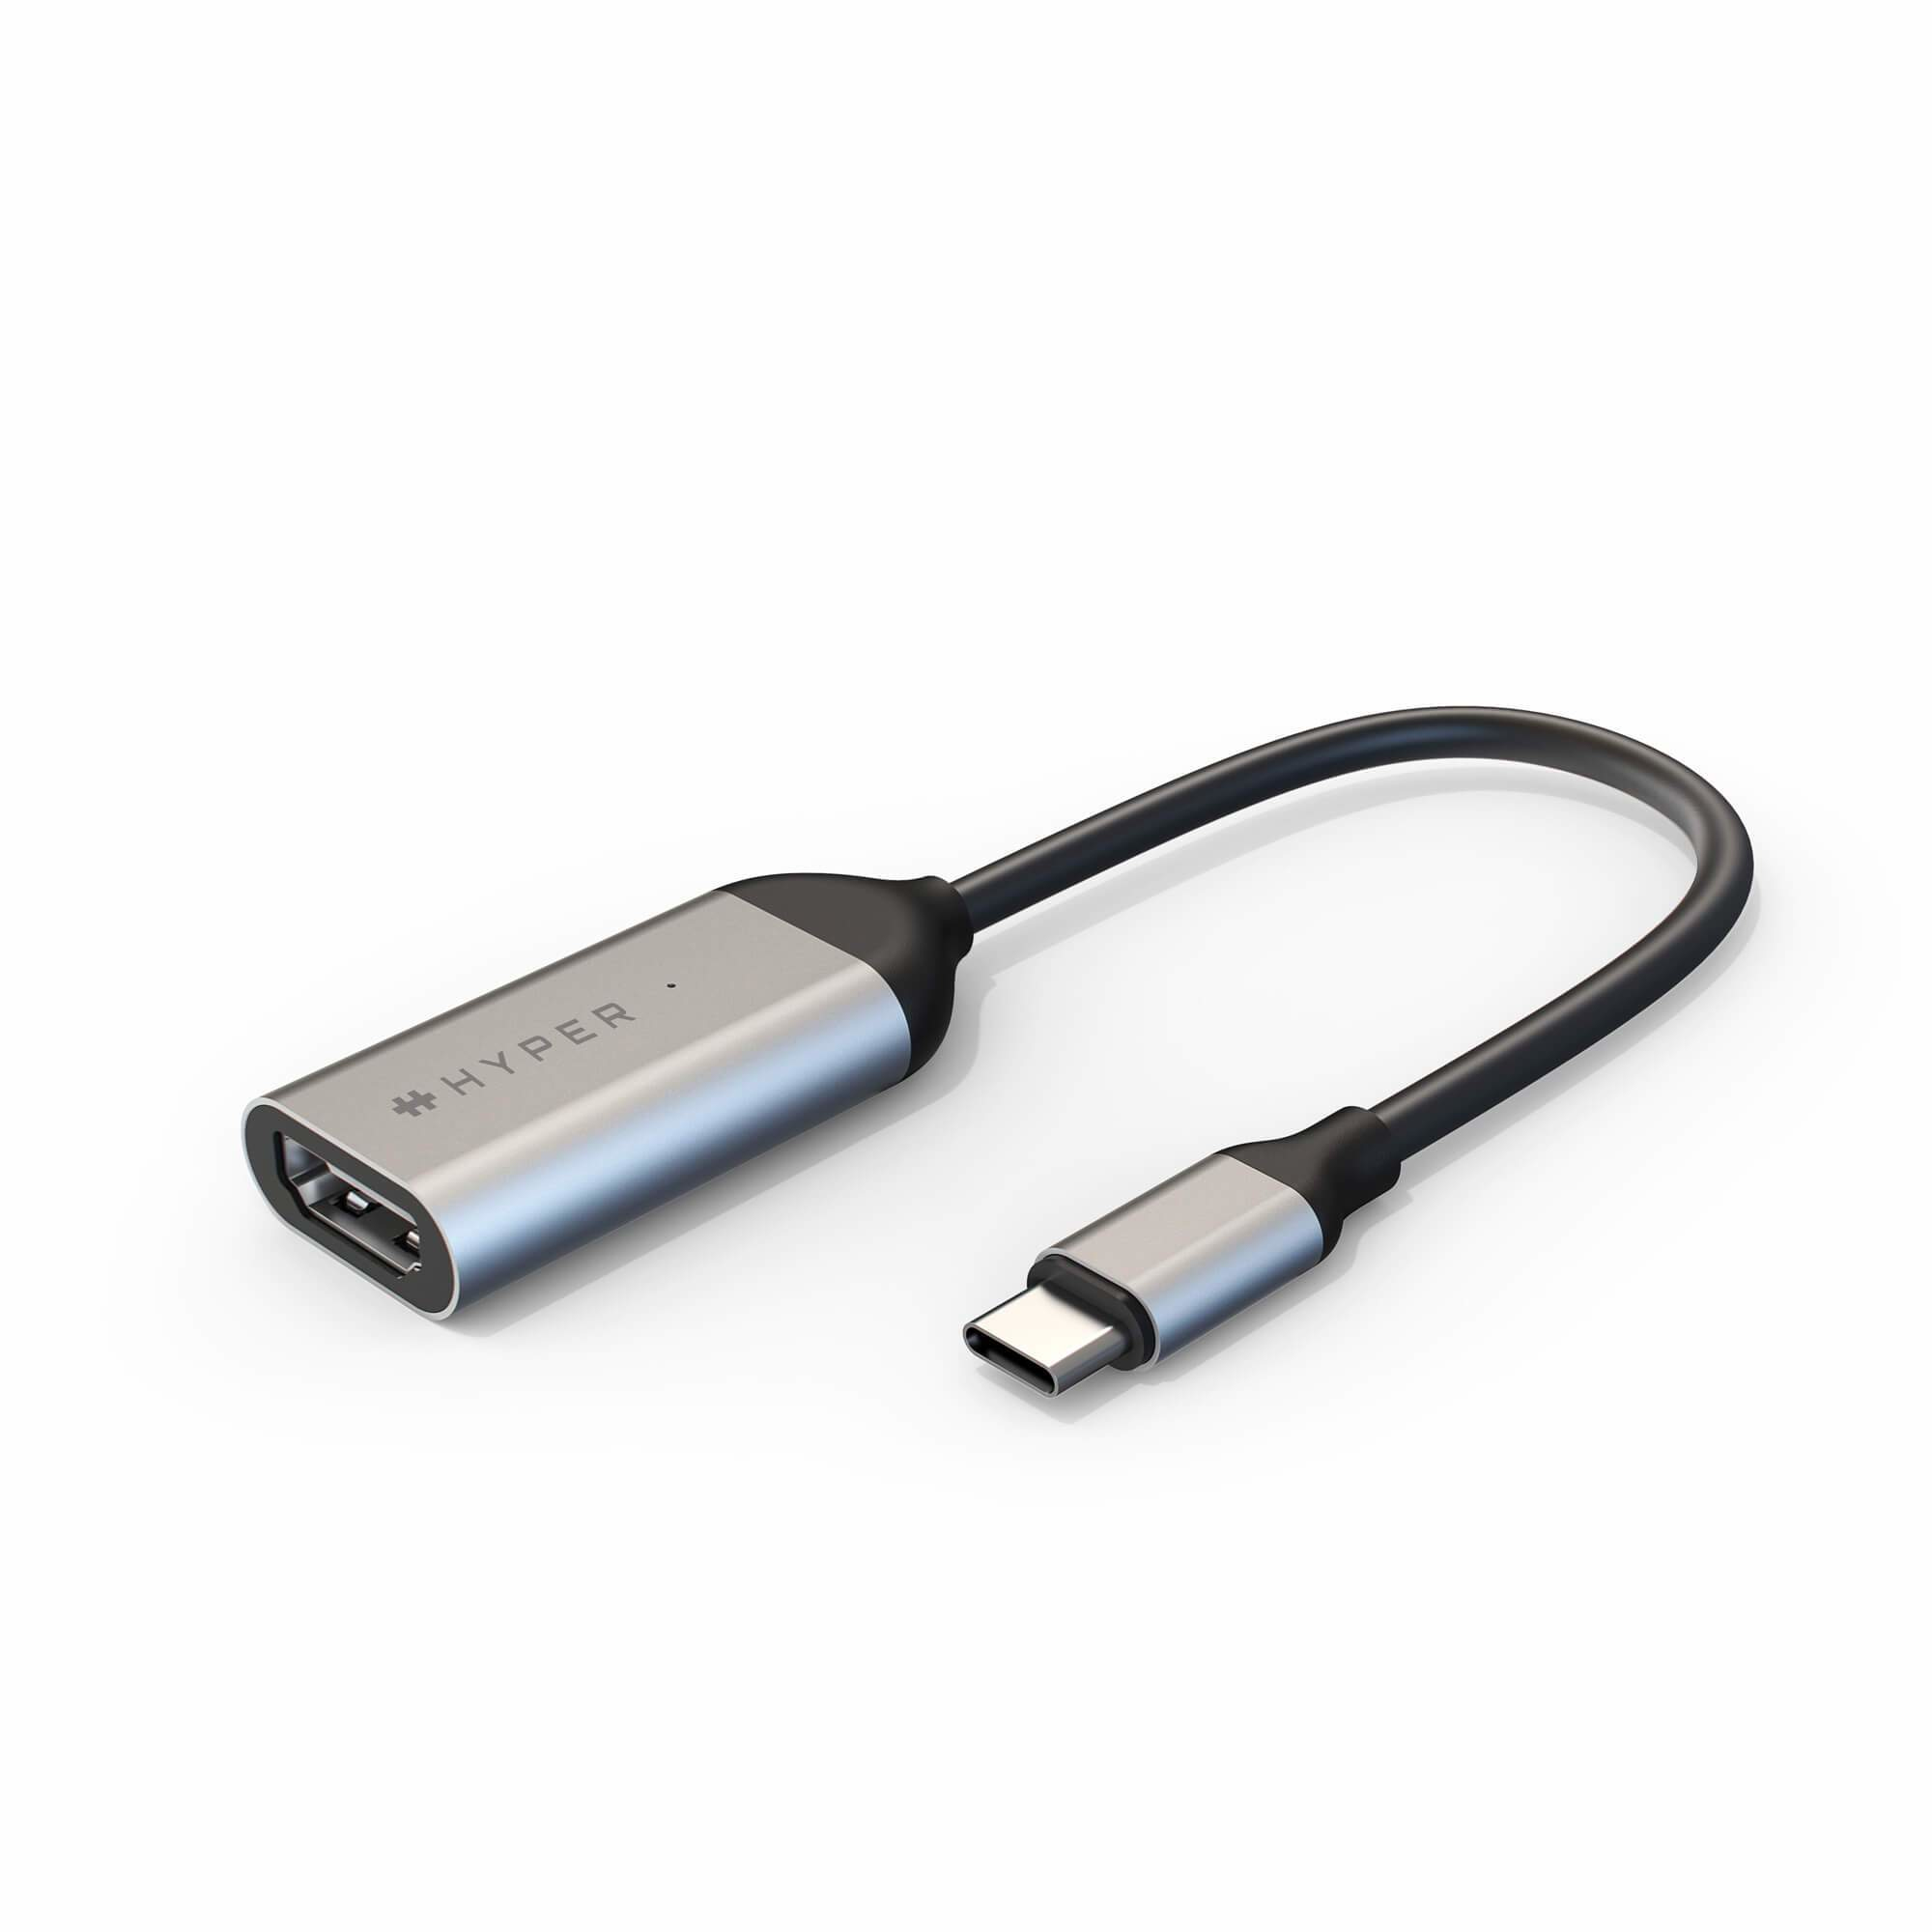 Targus HyperDrive - Videoadapter - 24 pin USB-C männlich zu HDMI weiblich